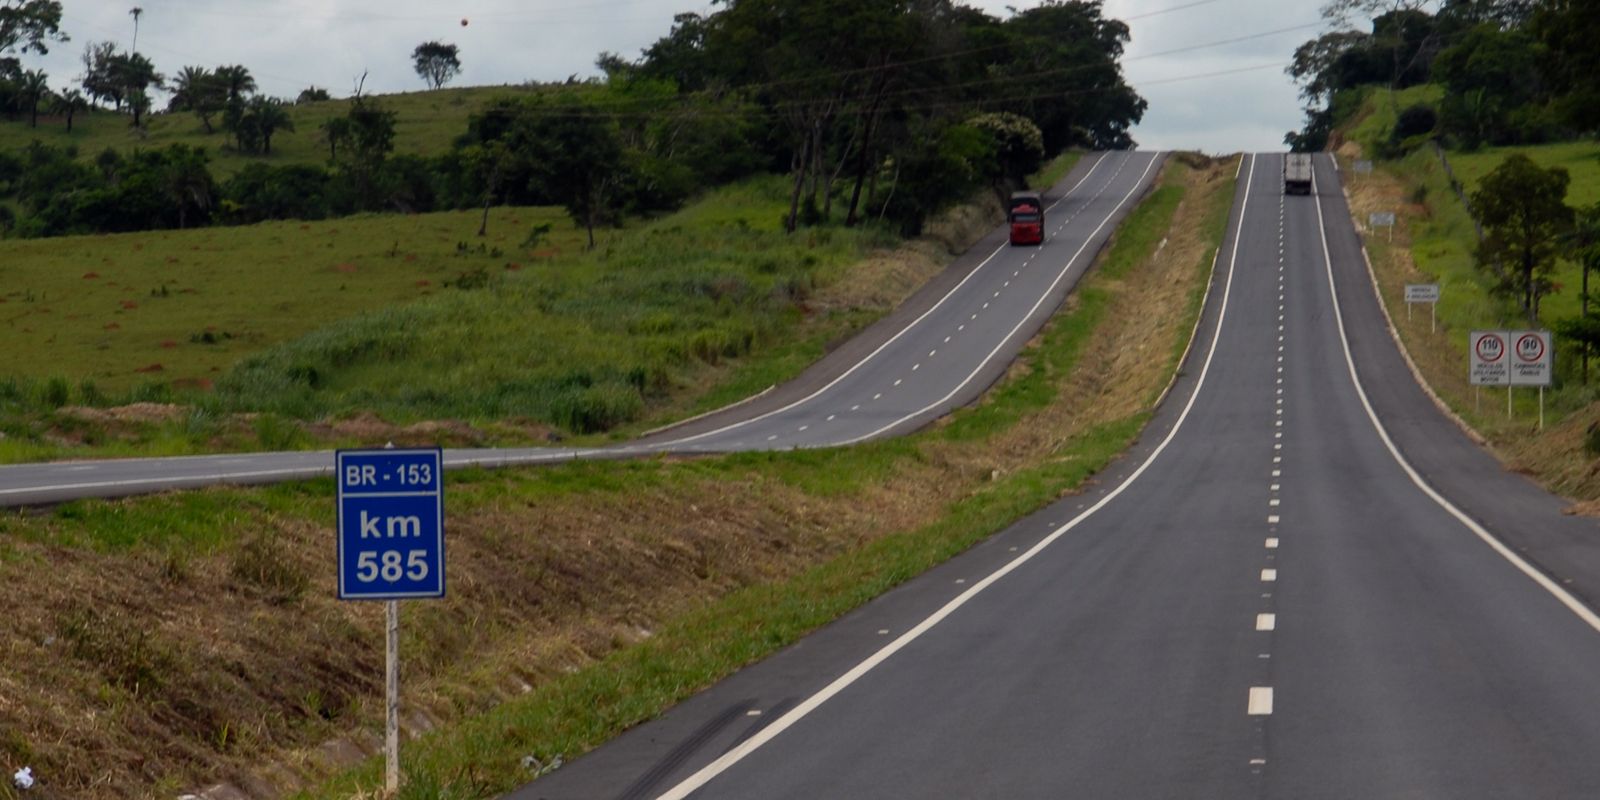 Governo investe mais de R$ 950 milhões em estradas vicinais